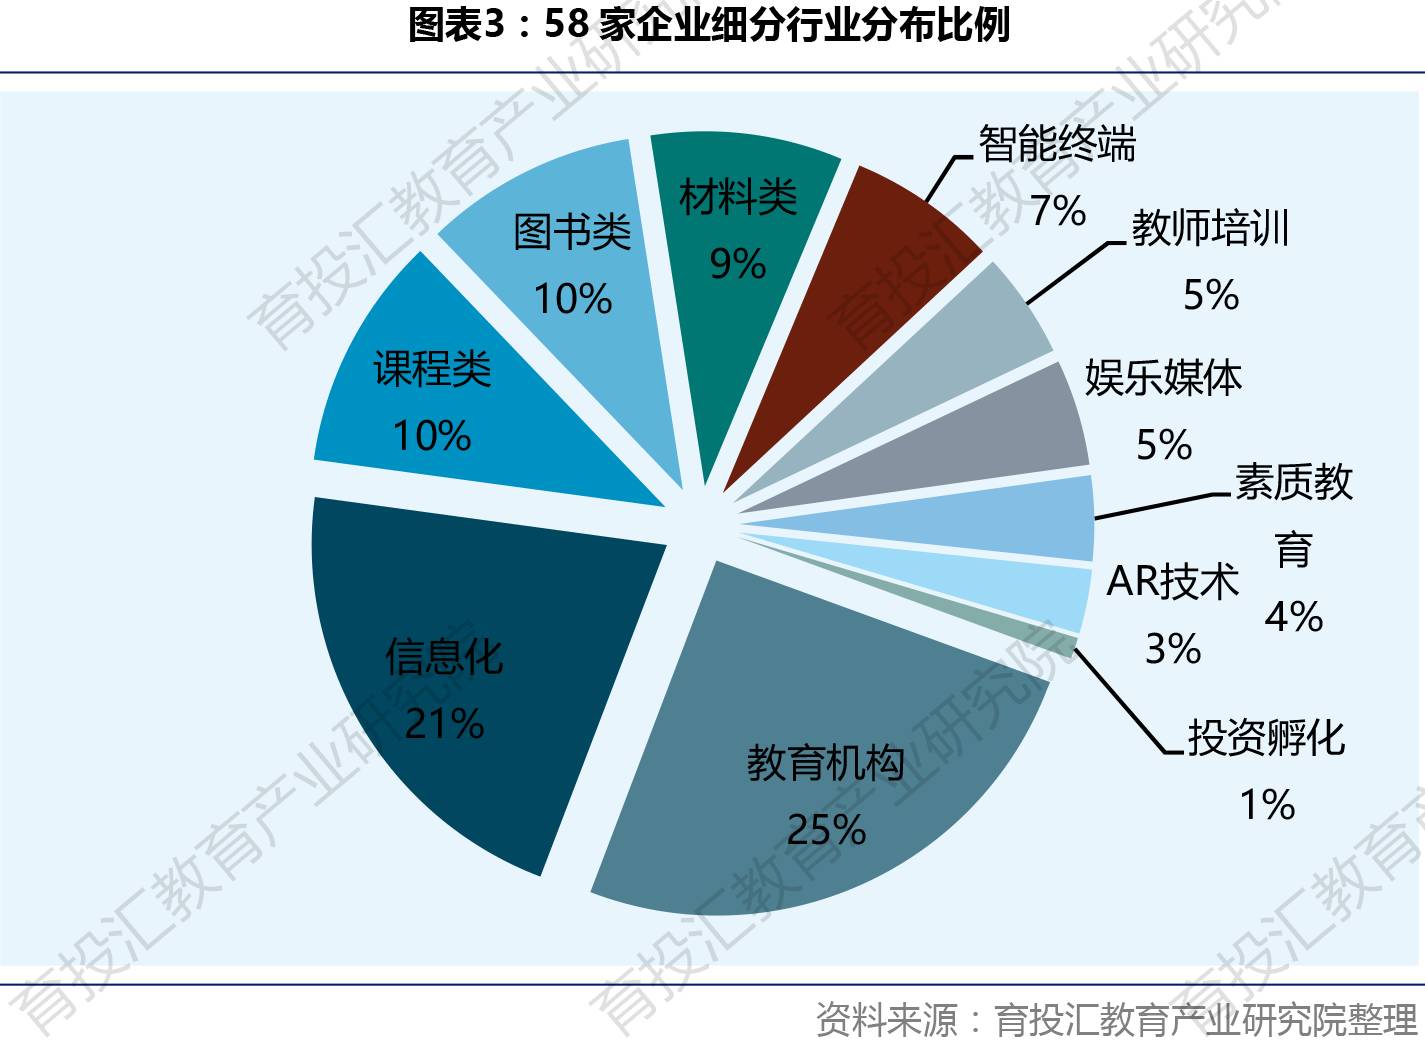 中国资本市场近60家幼教企业发展趋势分析